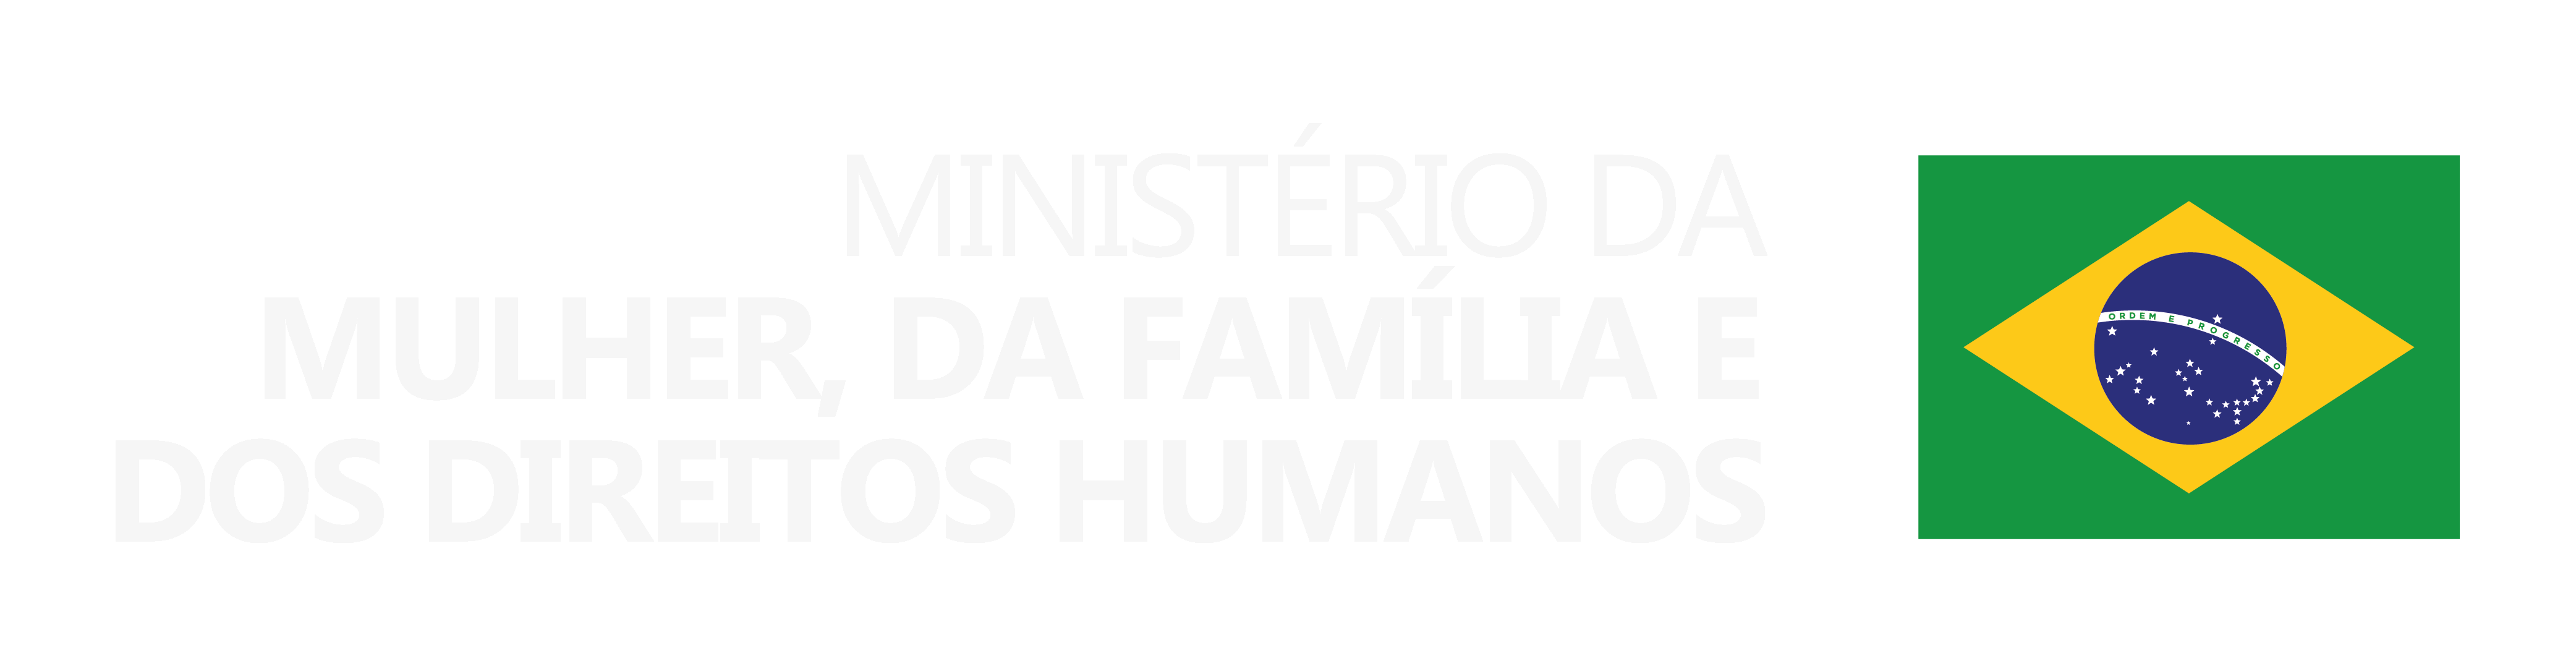 Ministério da Mulher, da Família e dos Direitos Humanos